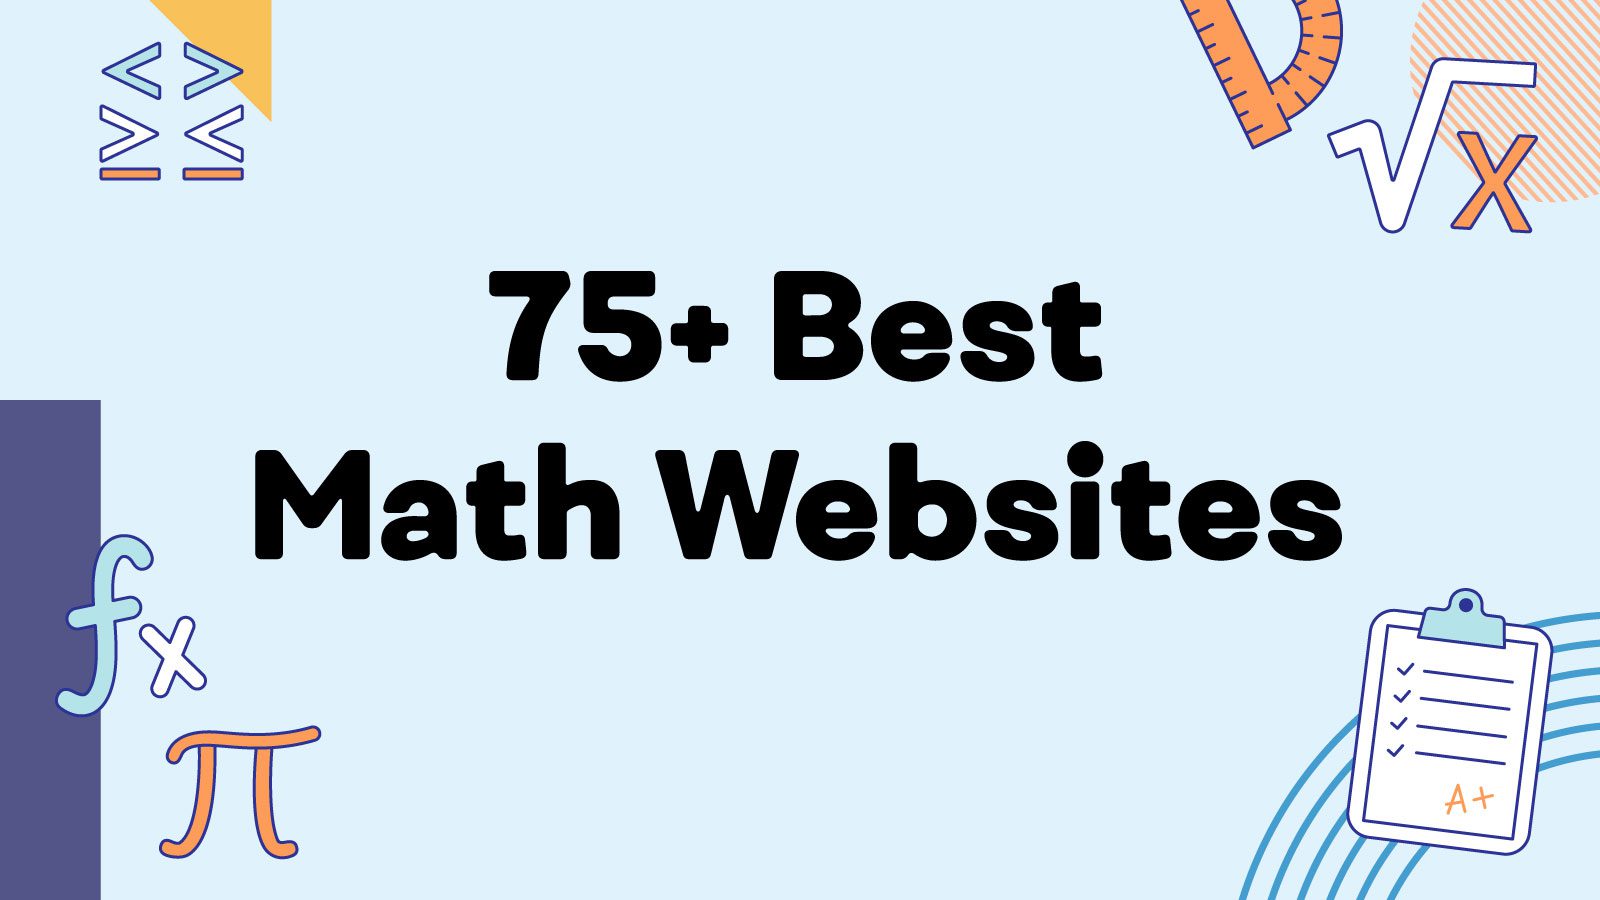 75+ Best math websites for teachers.